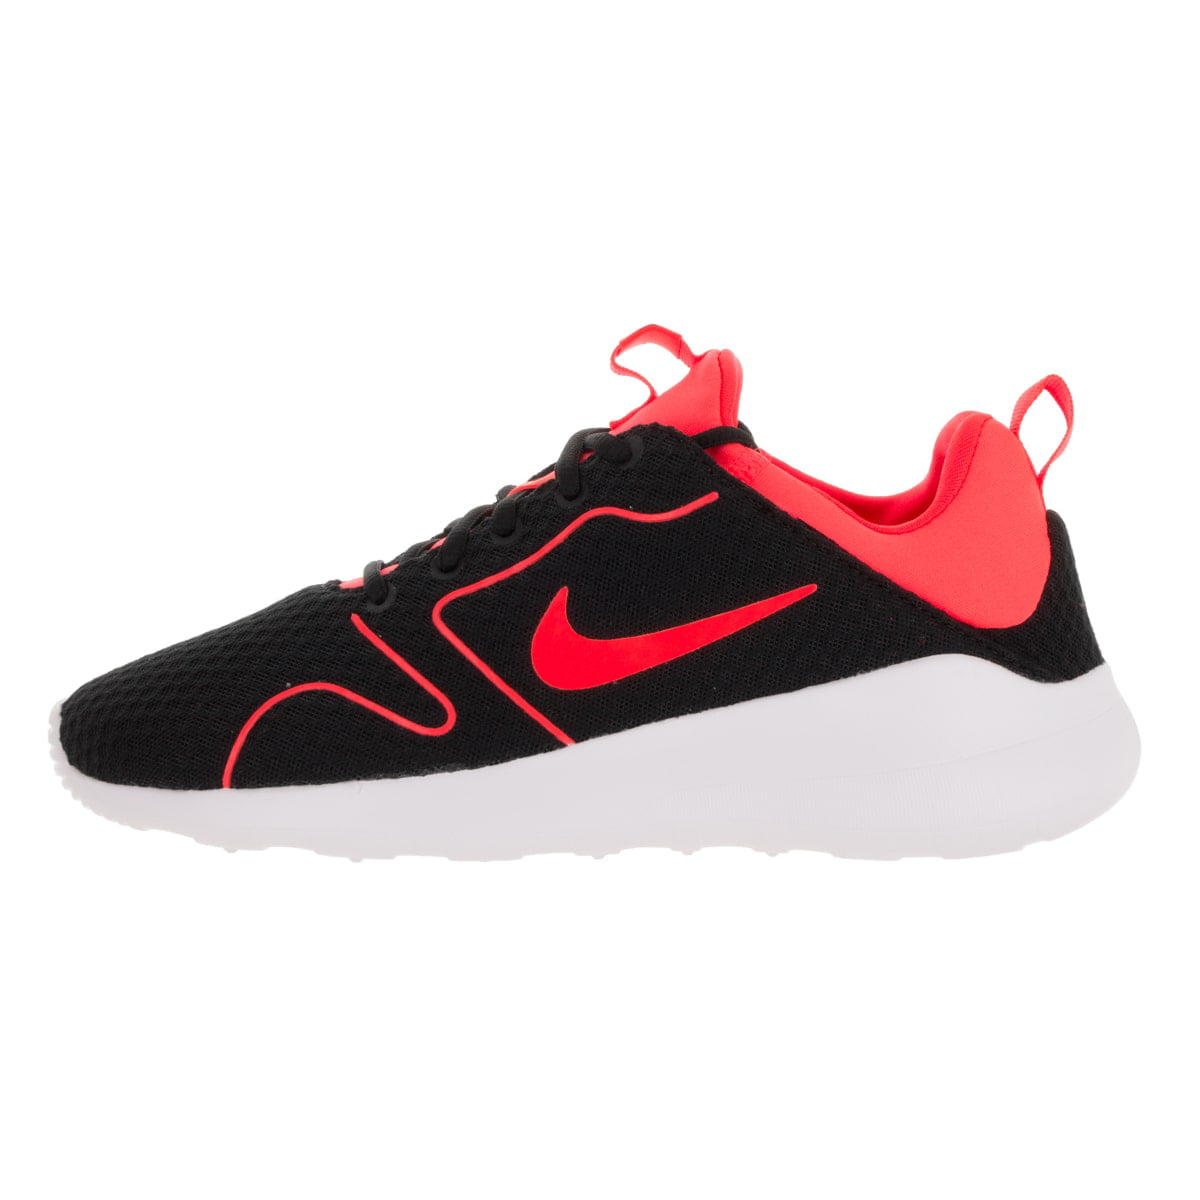 Kategori venom mål Nike Kaishi 2.0 Breathe 833457 081 Men's Crimson/White Running Shoes -  Walmart.com